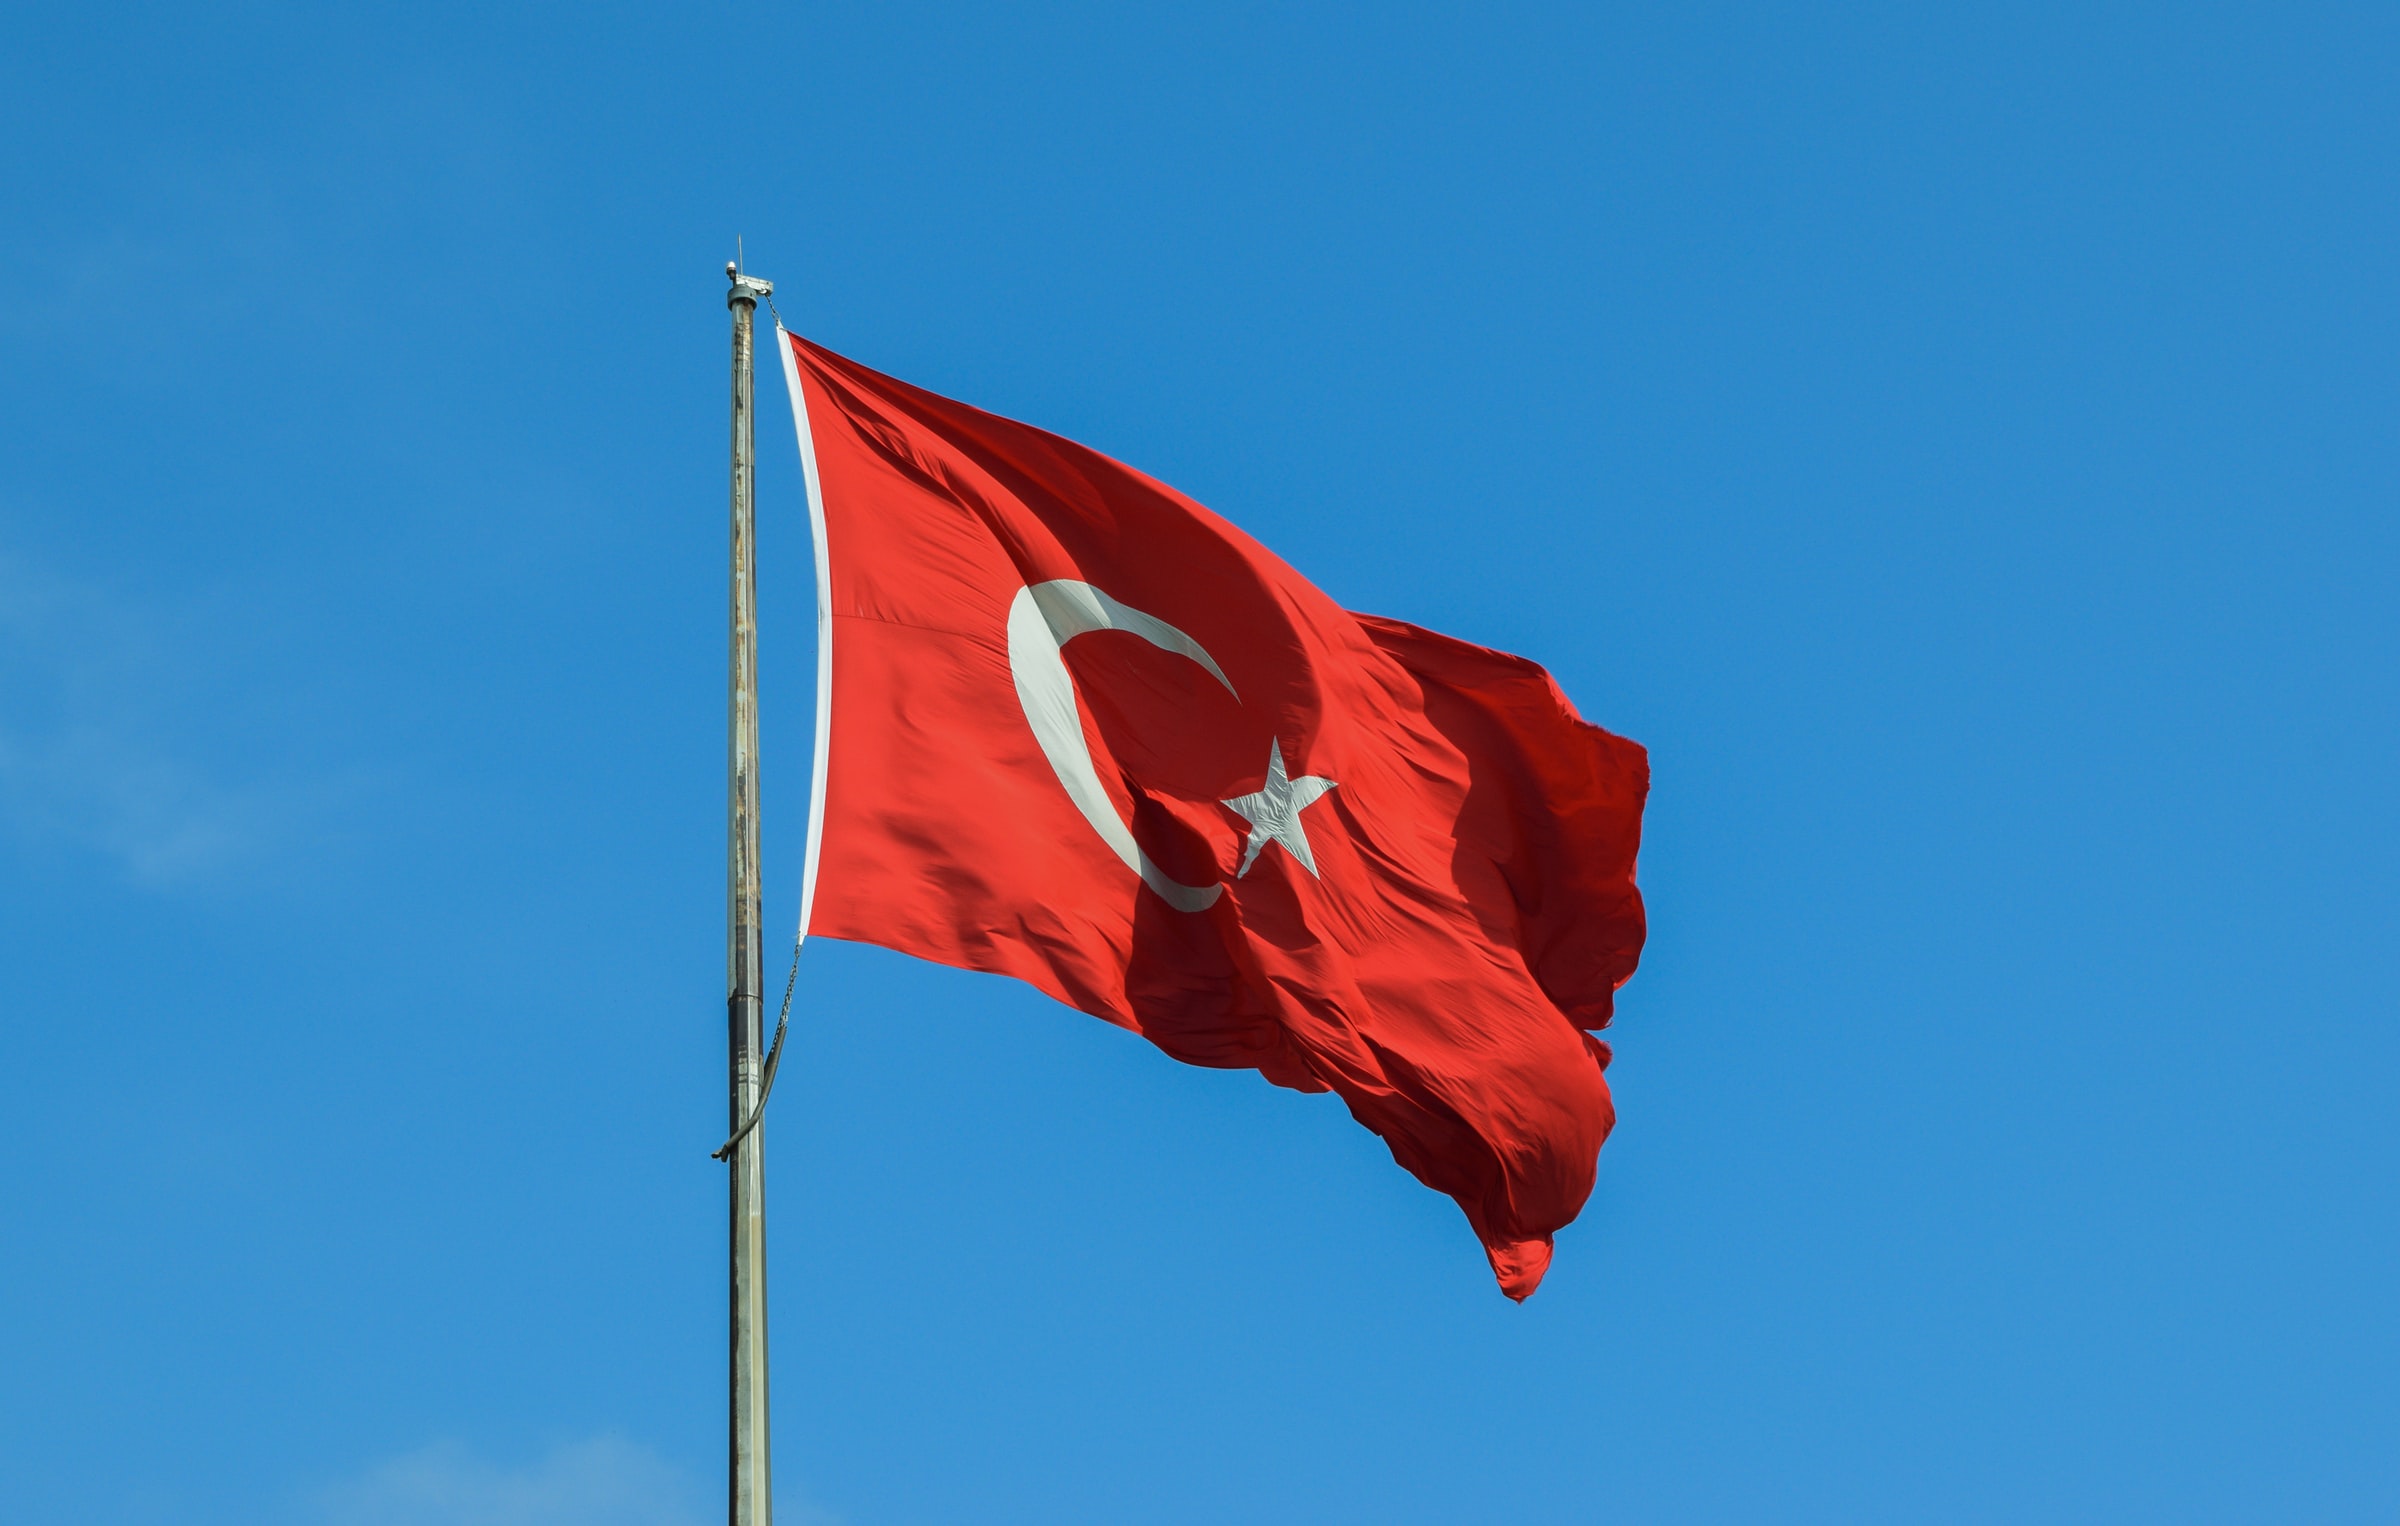 De turkiska aktierna och de börshandlade fonderna som följer denna marknad har stigit sedan fyndköparna hoppade in på en översåld marknad, men är kursuppgången på den turkiska aktiemarknaden på riktigt? iShares MSCI Turkey ETF (NYSEArca: TUR) ligger emellertid